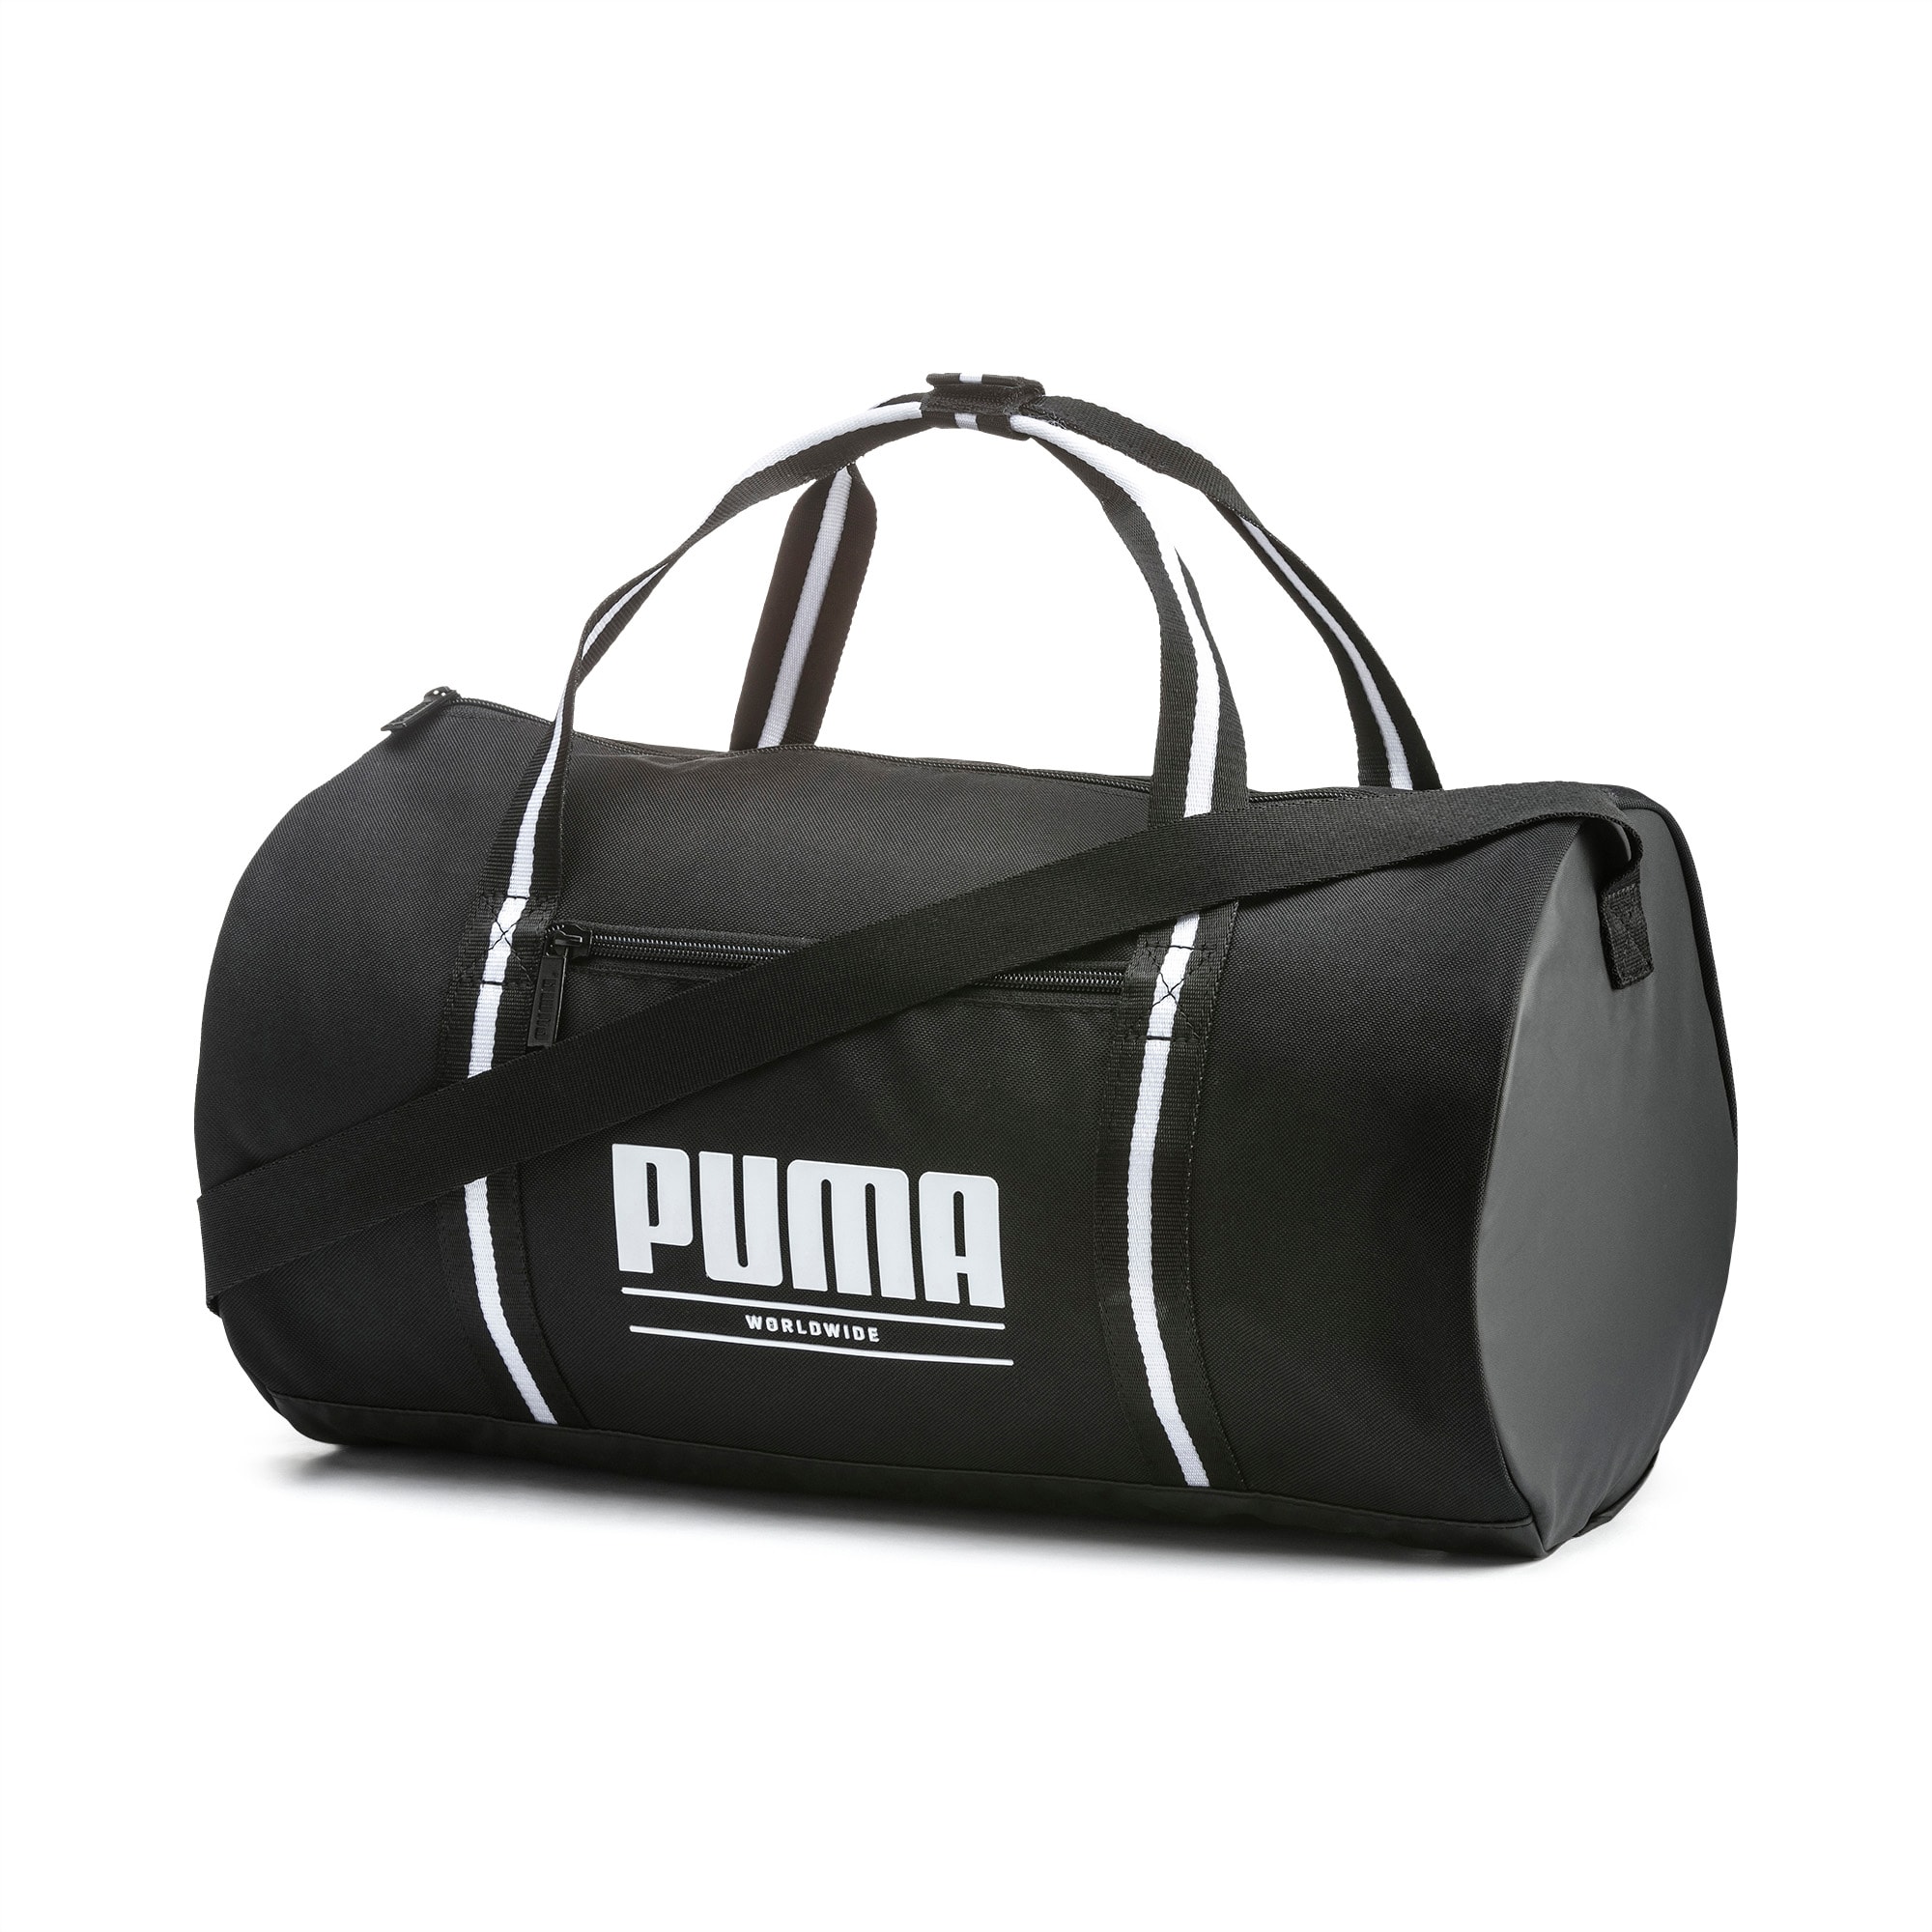 puma core barrel bag